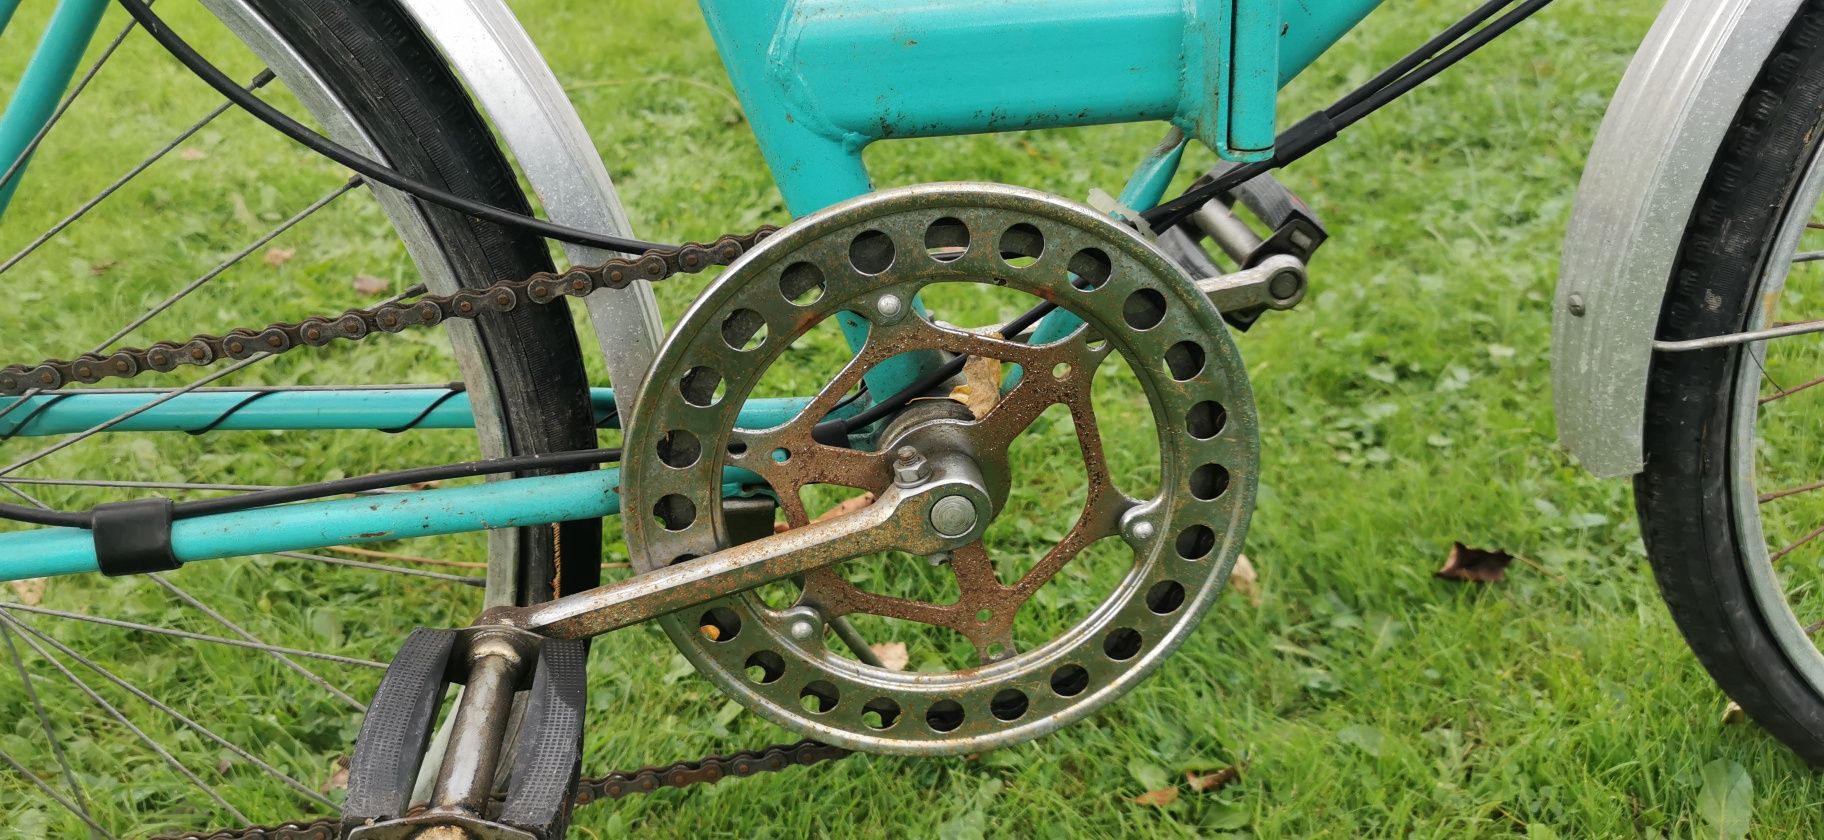 Rower składak Zenit 3 biegi oryginał